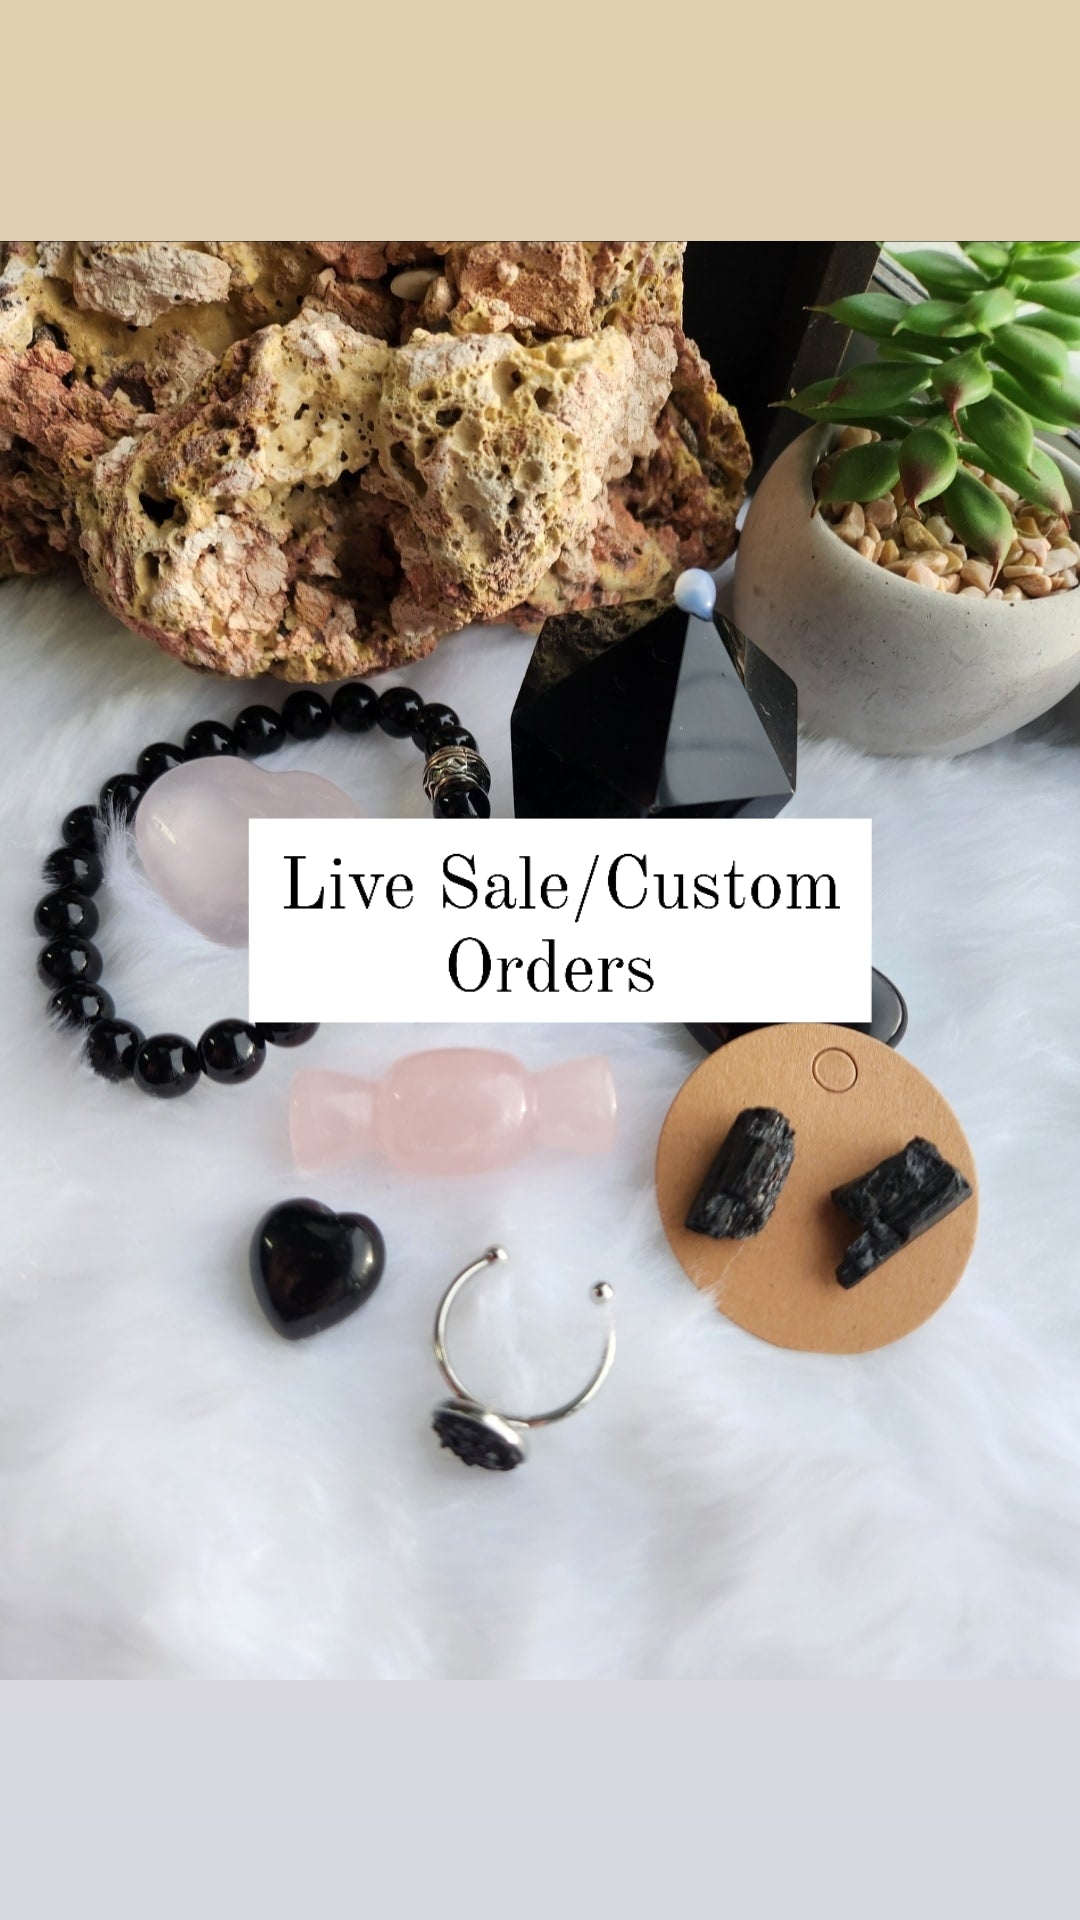 Live Sales/Custom Orders